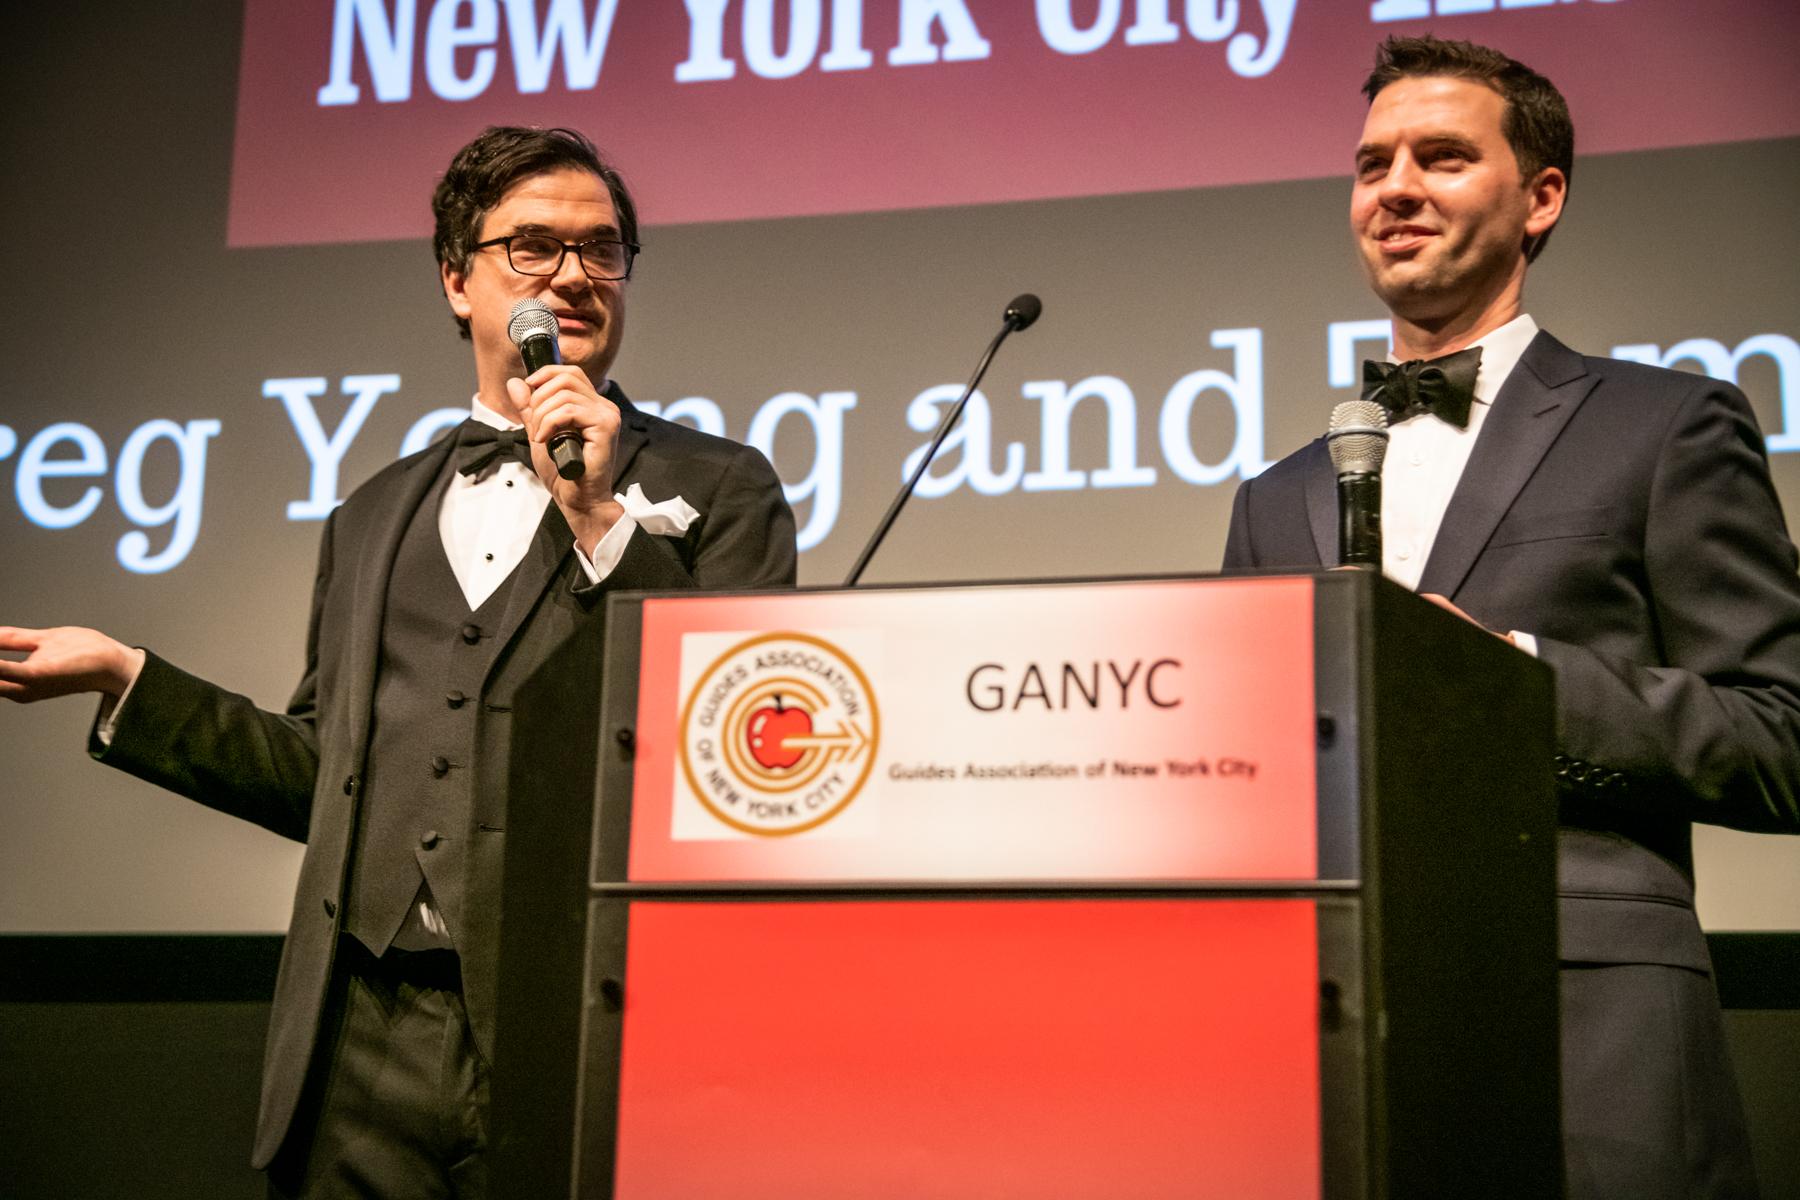 6th Annual GANYC Apple Awards